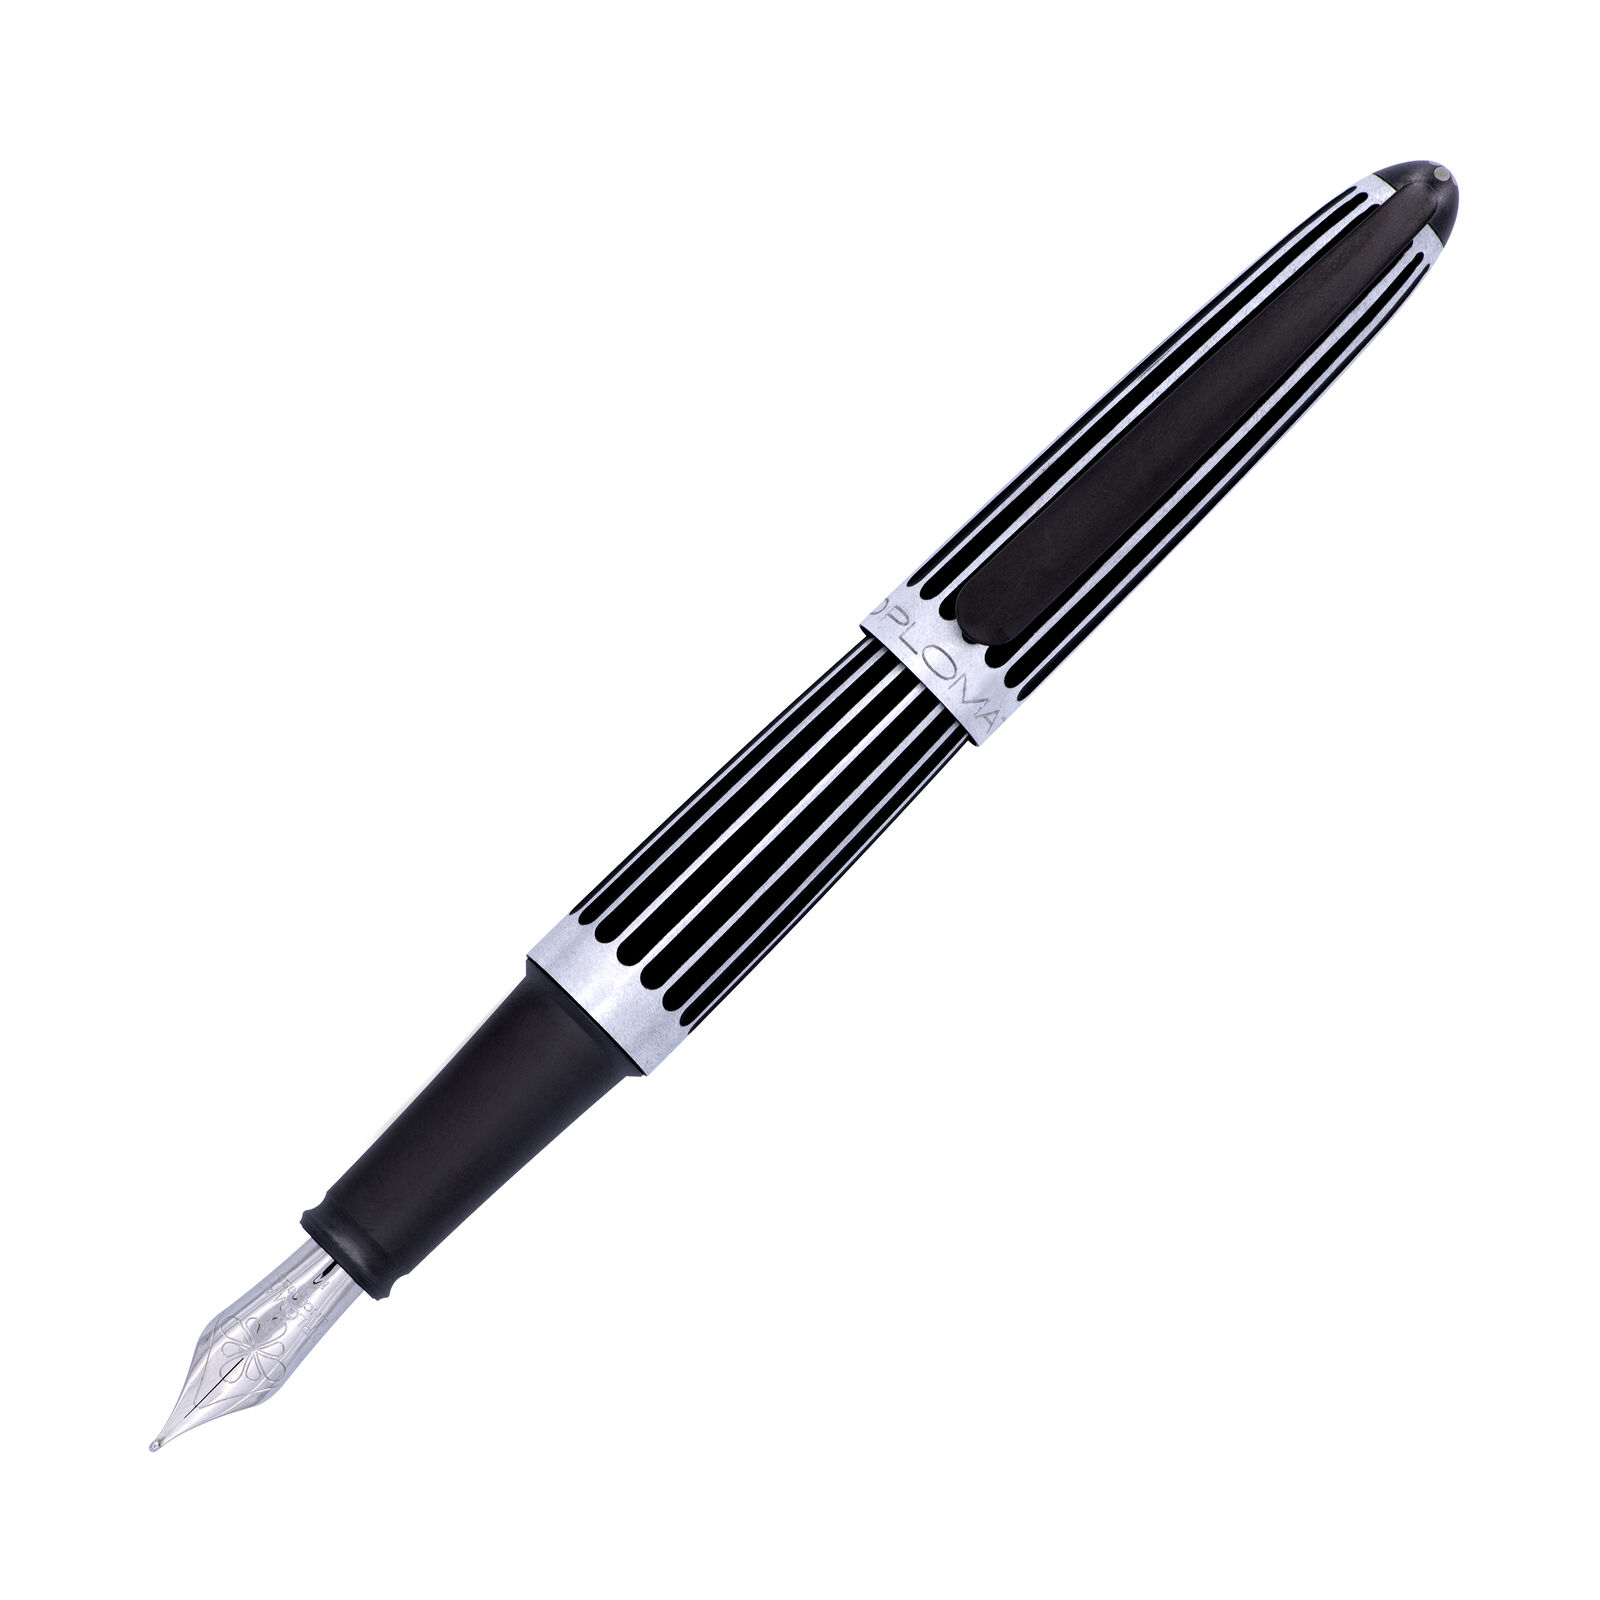 Diplomat Aero Fountain Pen in Stripes Black - Extra Fine - NEW in original box